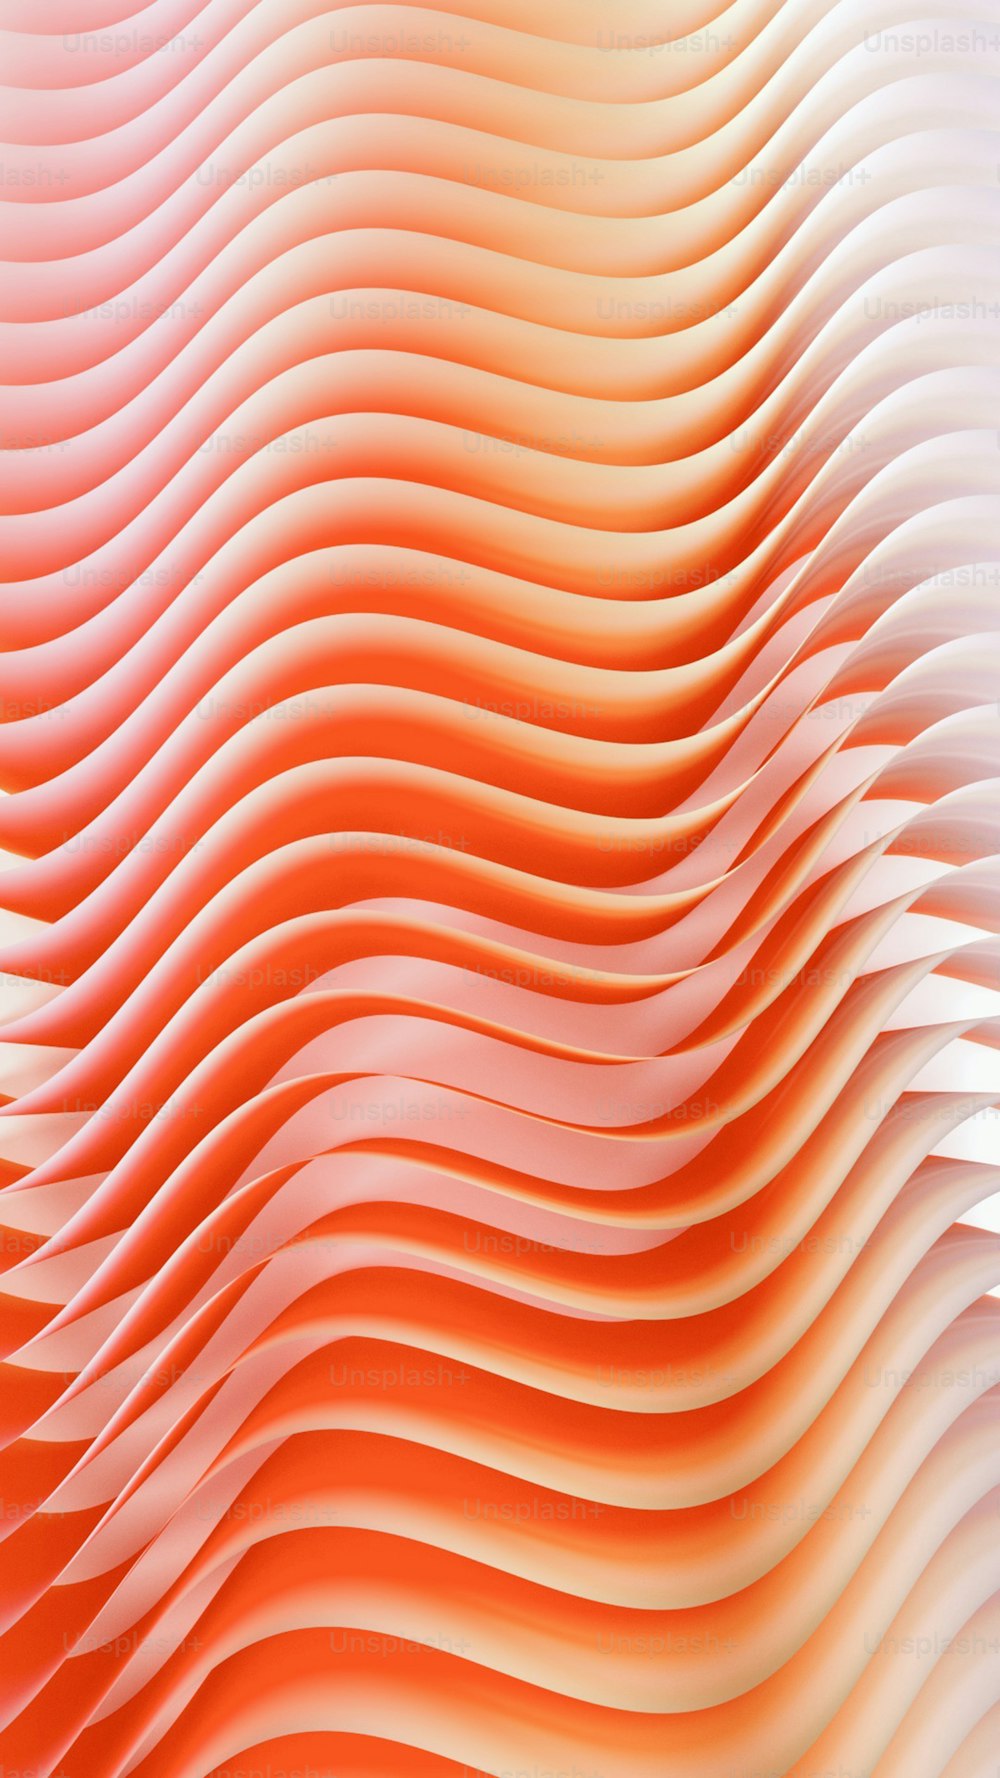 コンピュータで生成された波線の画像